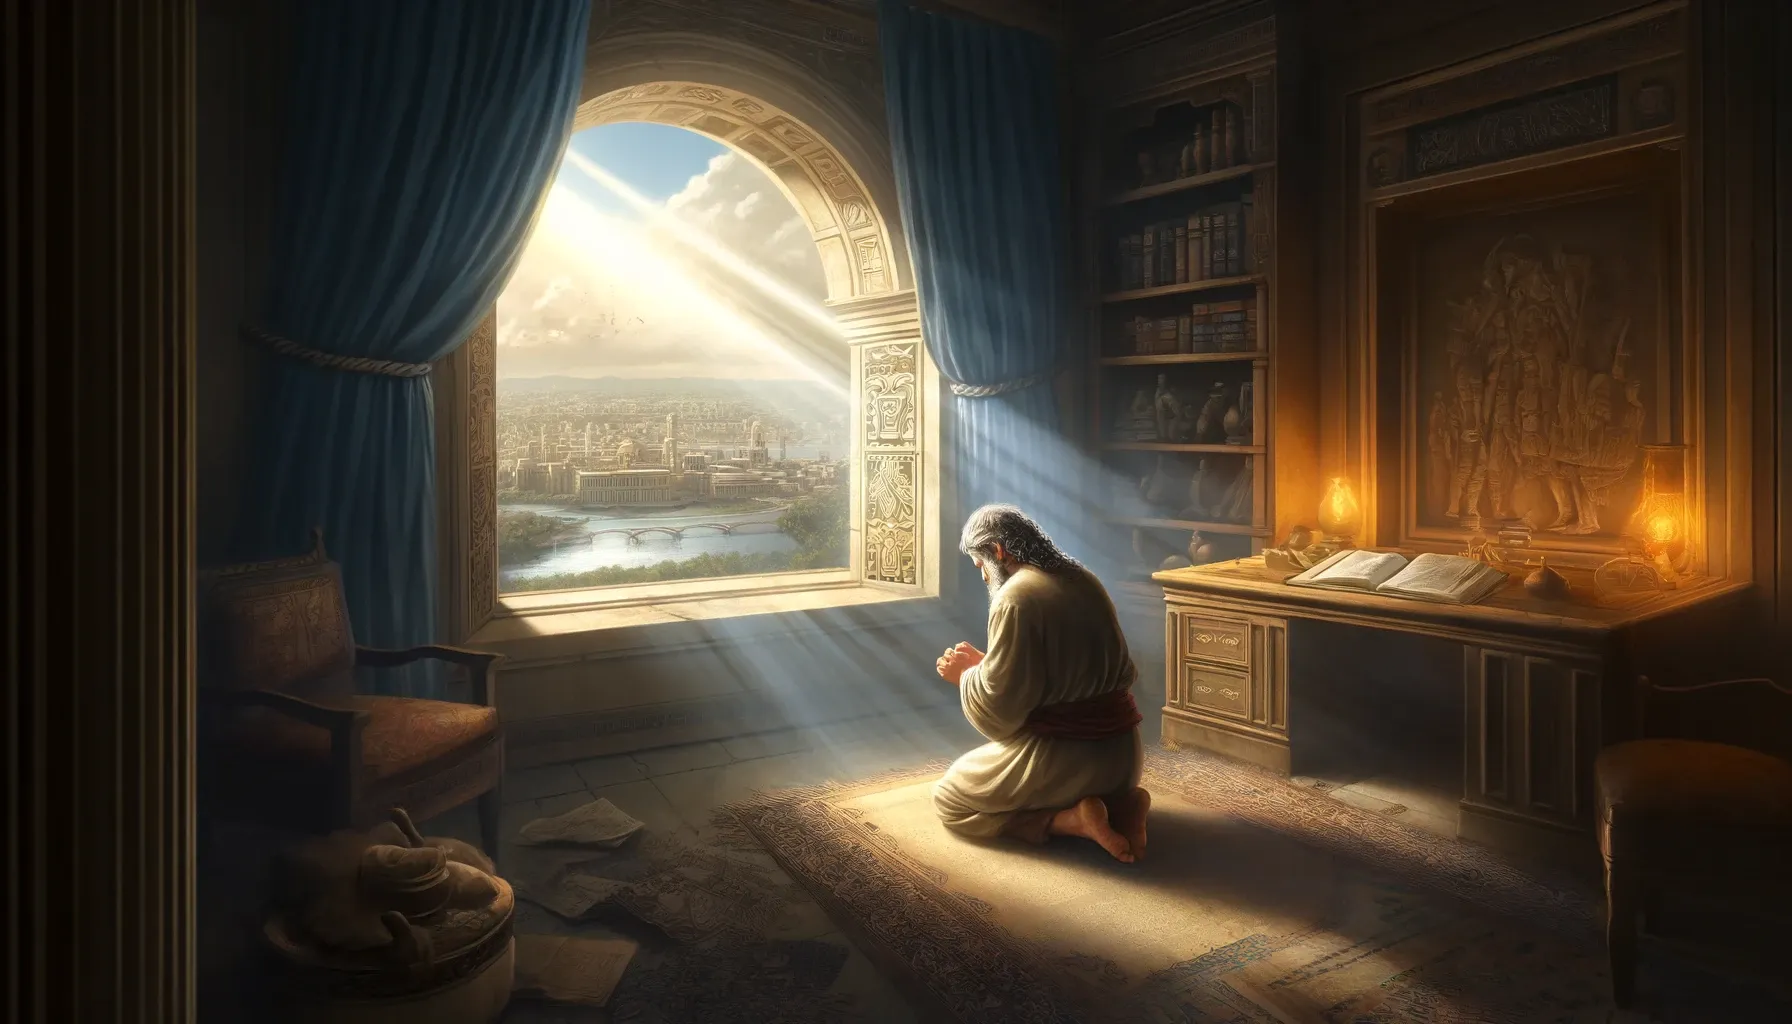 Profeta Daniel orando